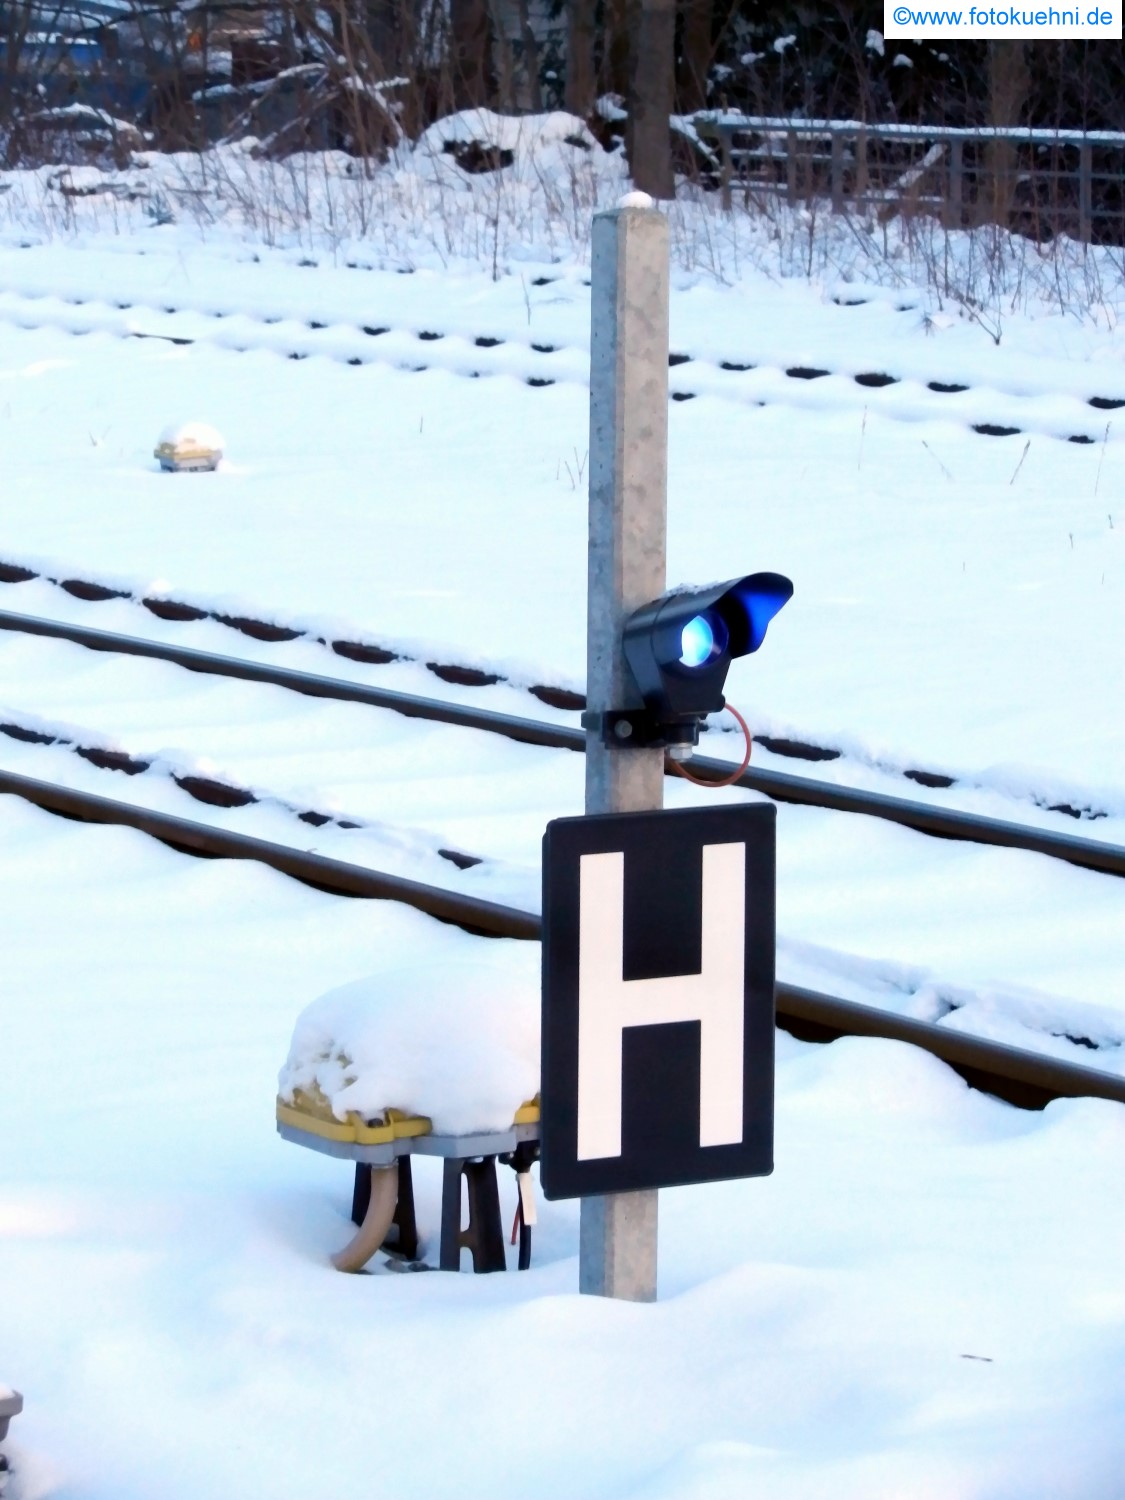 Haltetafel zwischen den Gleisen am Bahnhof Sebnitz - 26.01.2013